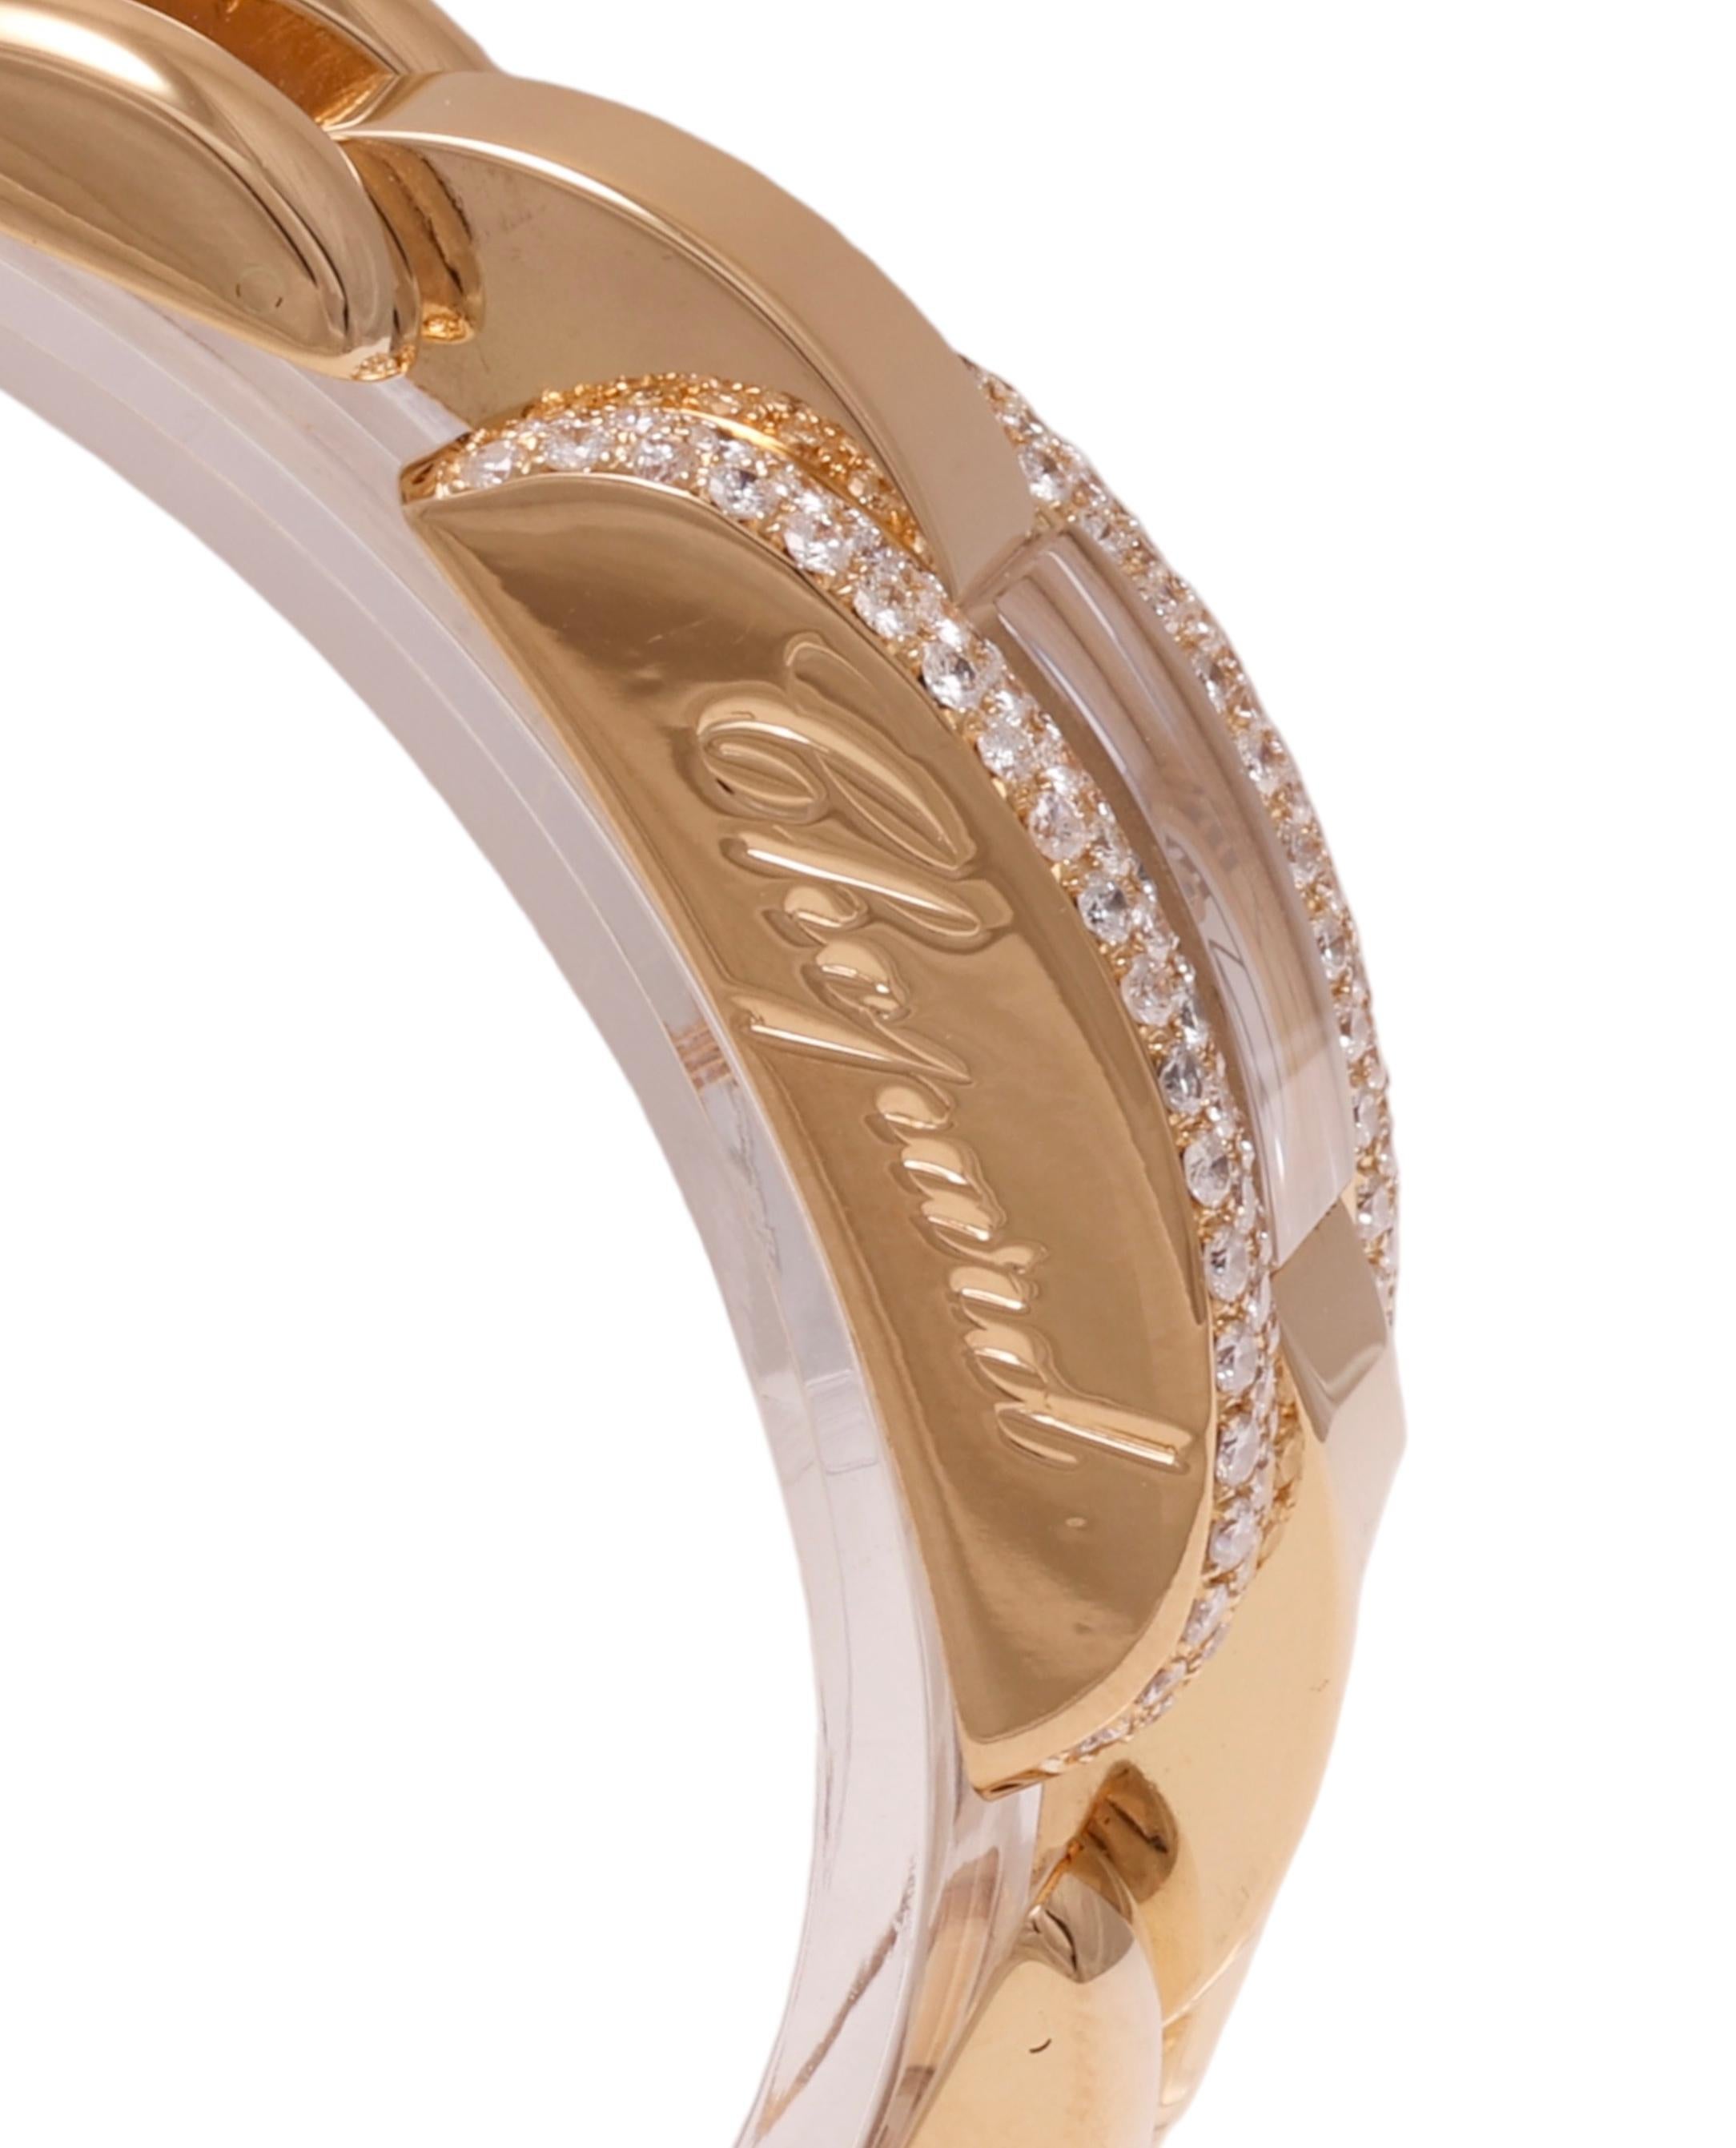 18 Kt. Gold & Diamonds Chopard La Strada Wrist Watch For Sale 6